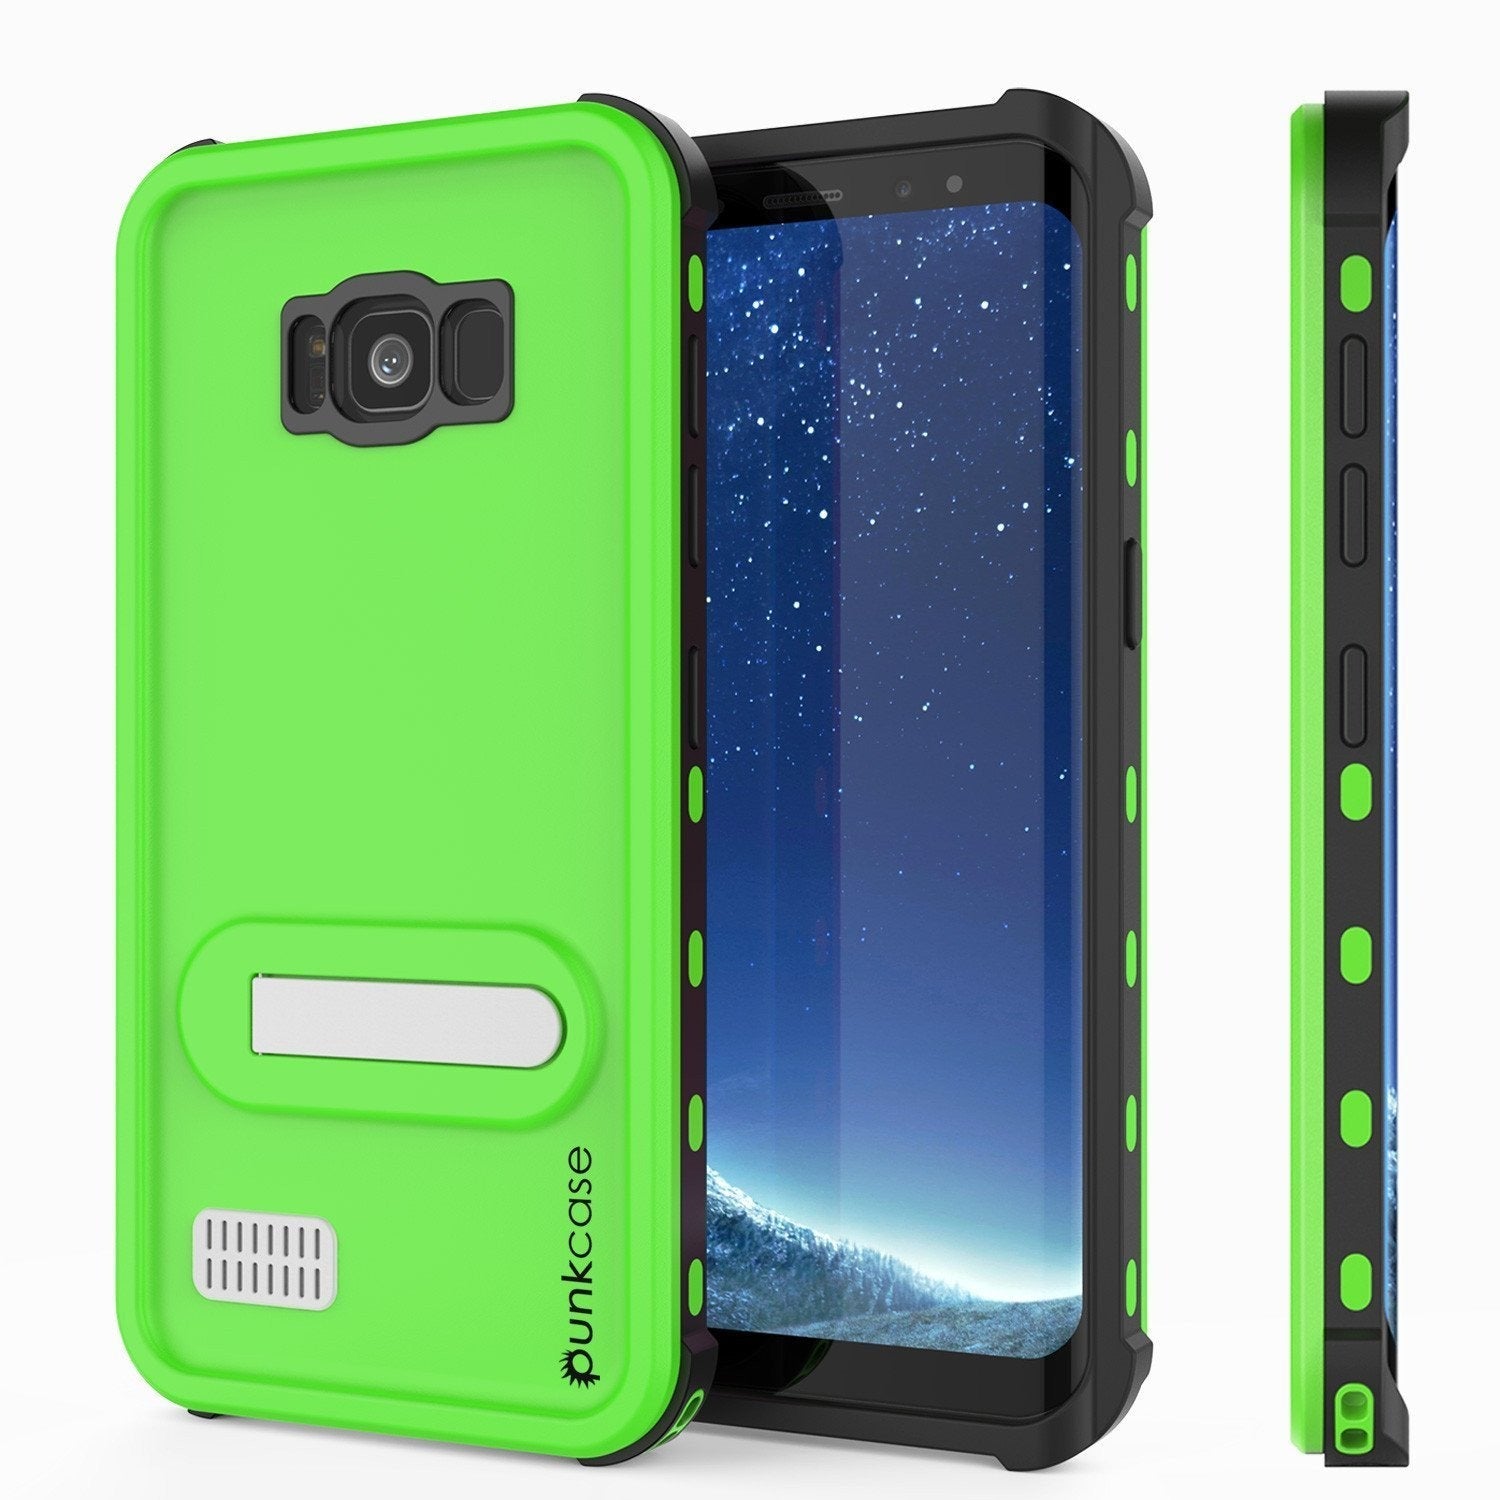 Protector [PURPLE]Galaxy S8 Waterproof Case, Punkcase [KickStud Series] [Slim Fit] [IP68 Certified] [Shockproof] [Snowproof] Armor Cover [Green]